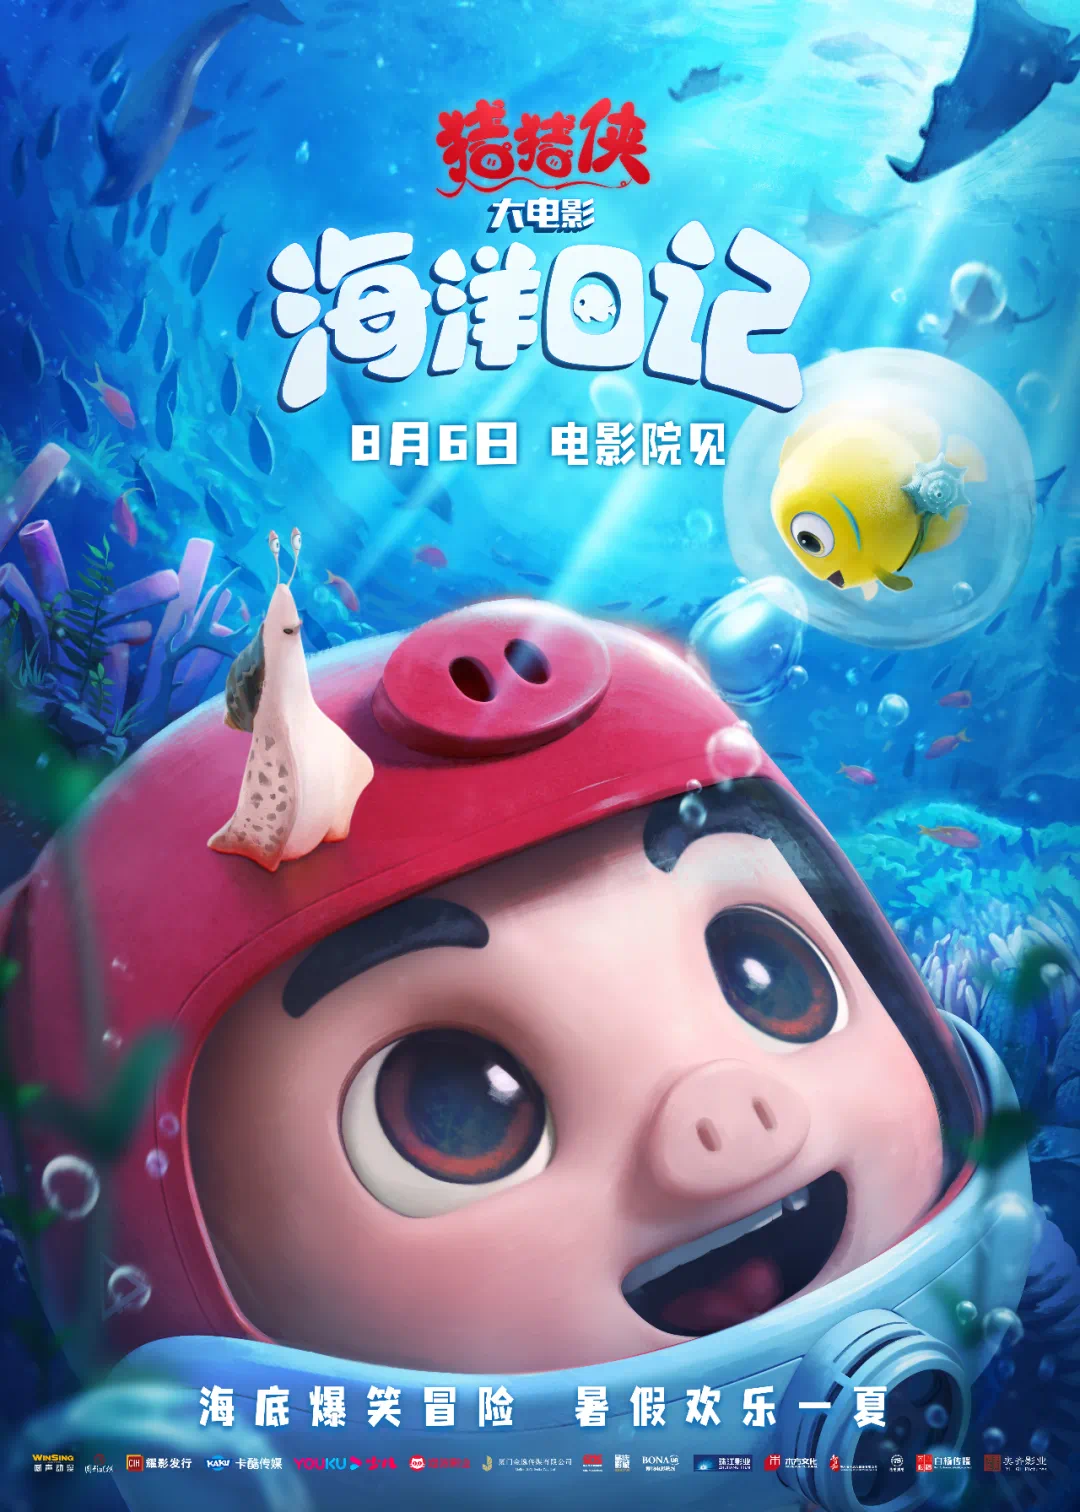 2、《猪猪侠大电影·海洋日记》电影海报.png